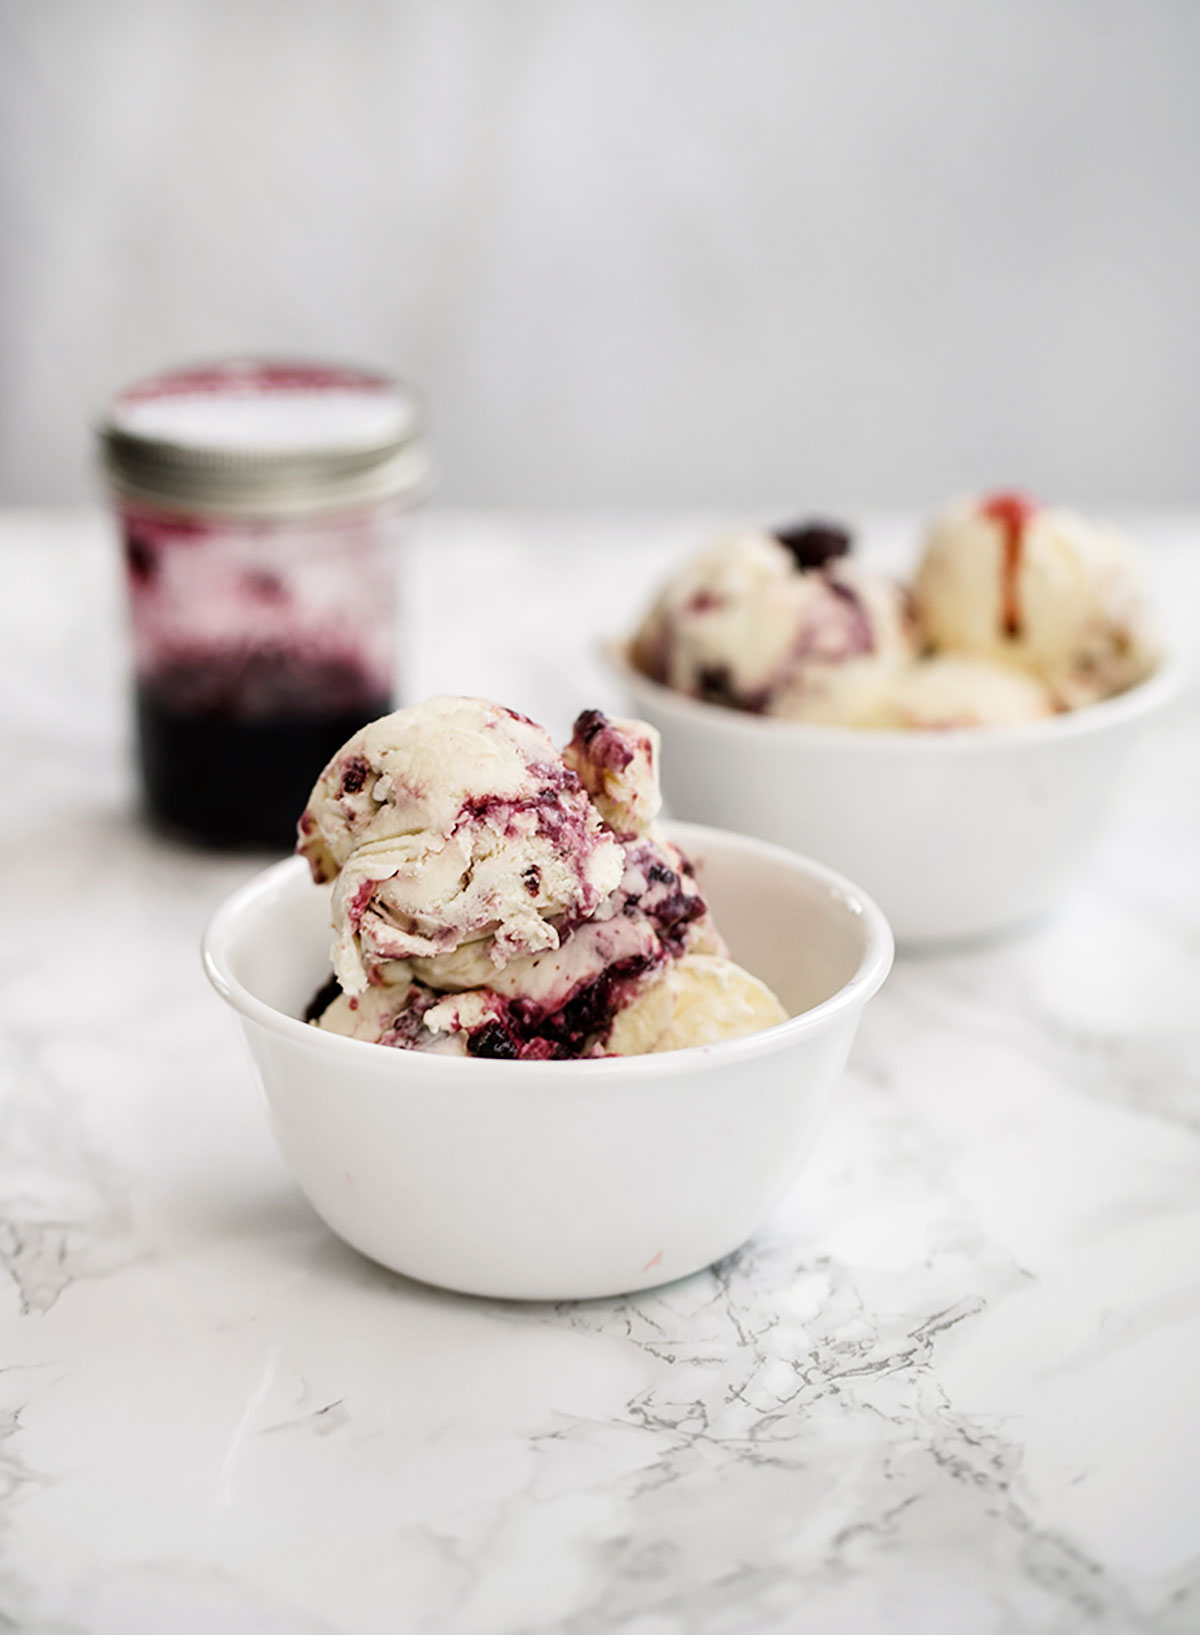 marionberry blackberry ice cream jam